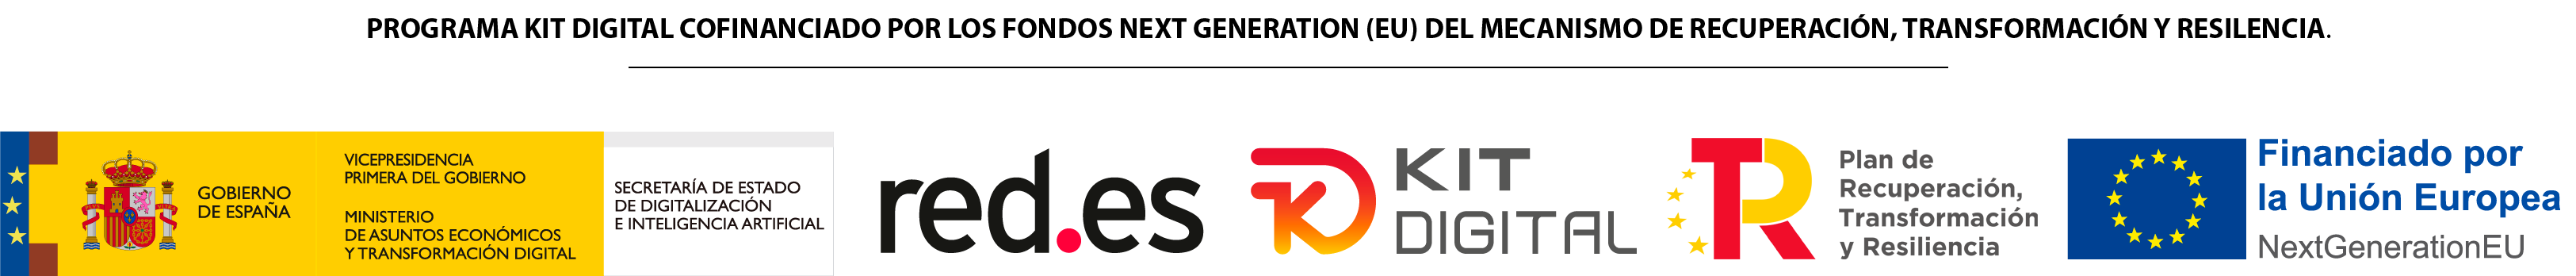 Logotipo del programa Kit Digital cofinanciado por los fondos europeos Next Generation.